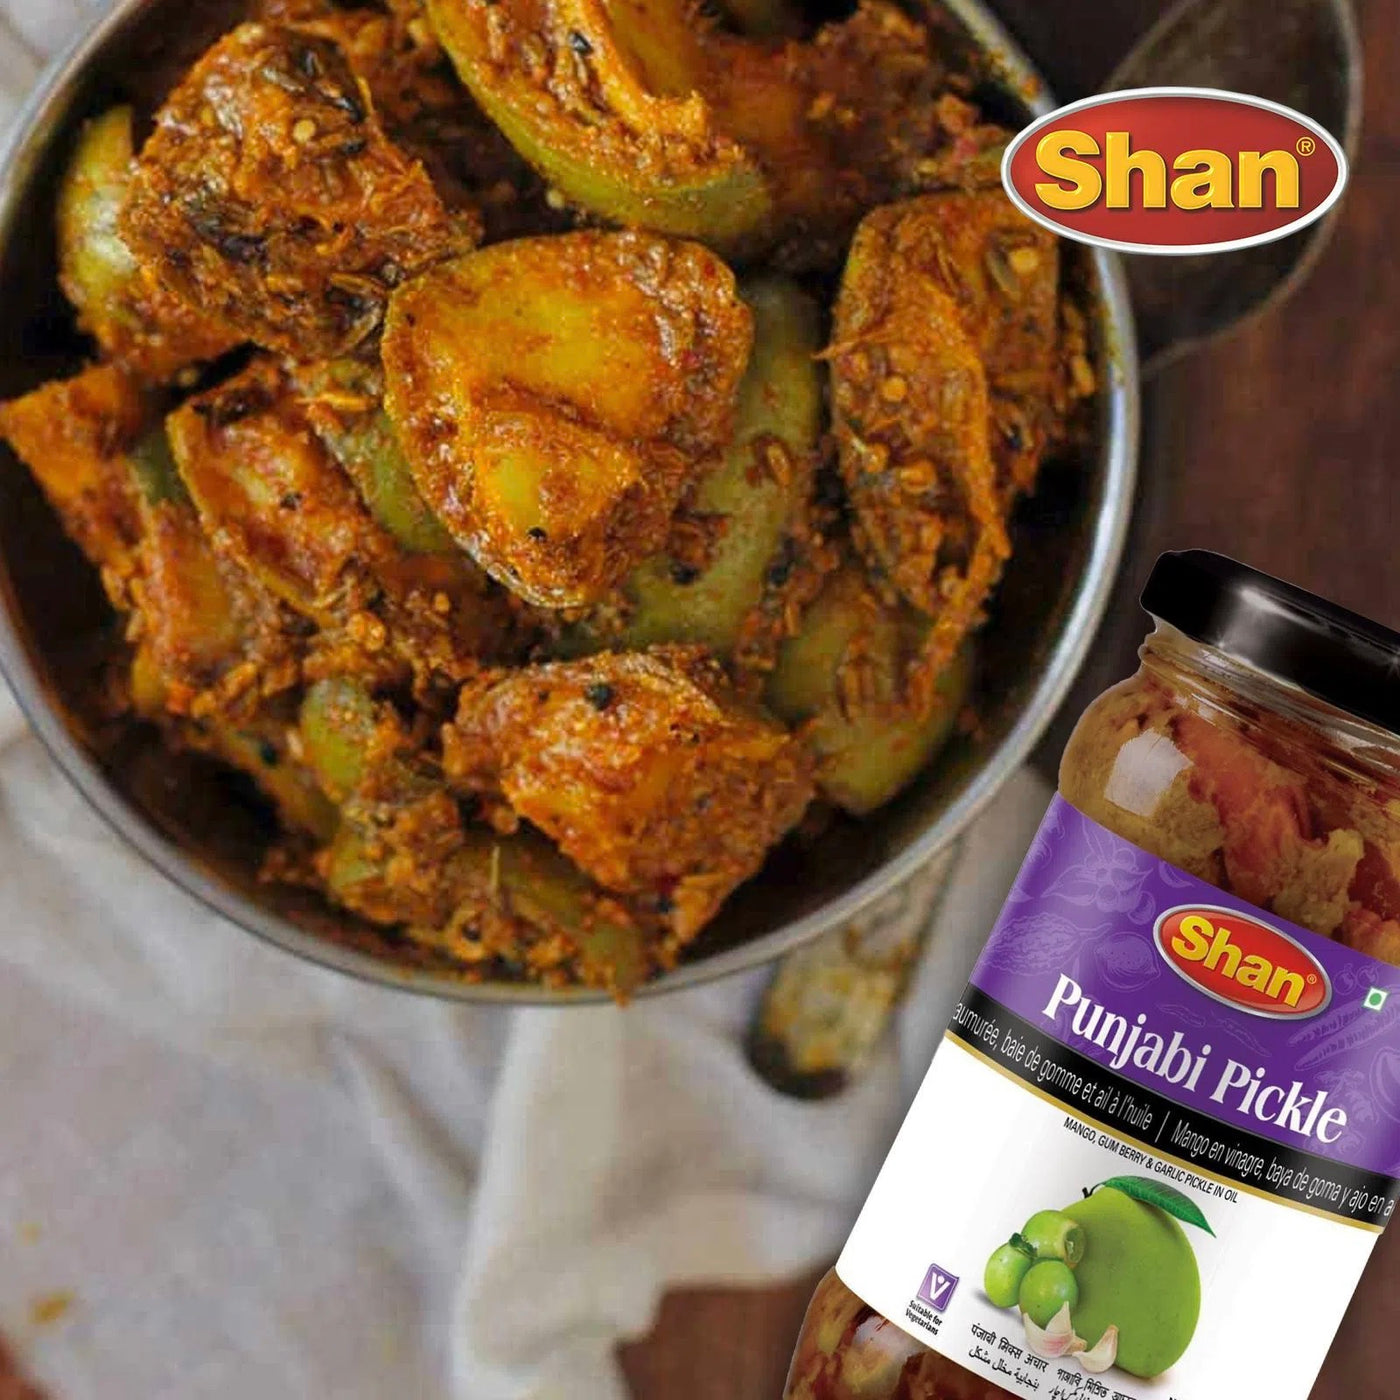 Shan Punjabi Mix Pickle | SHAN | 1kg